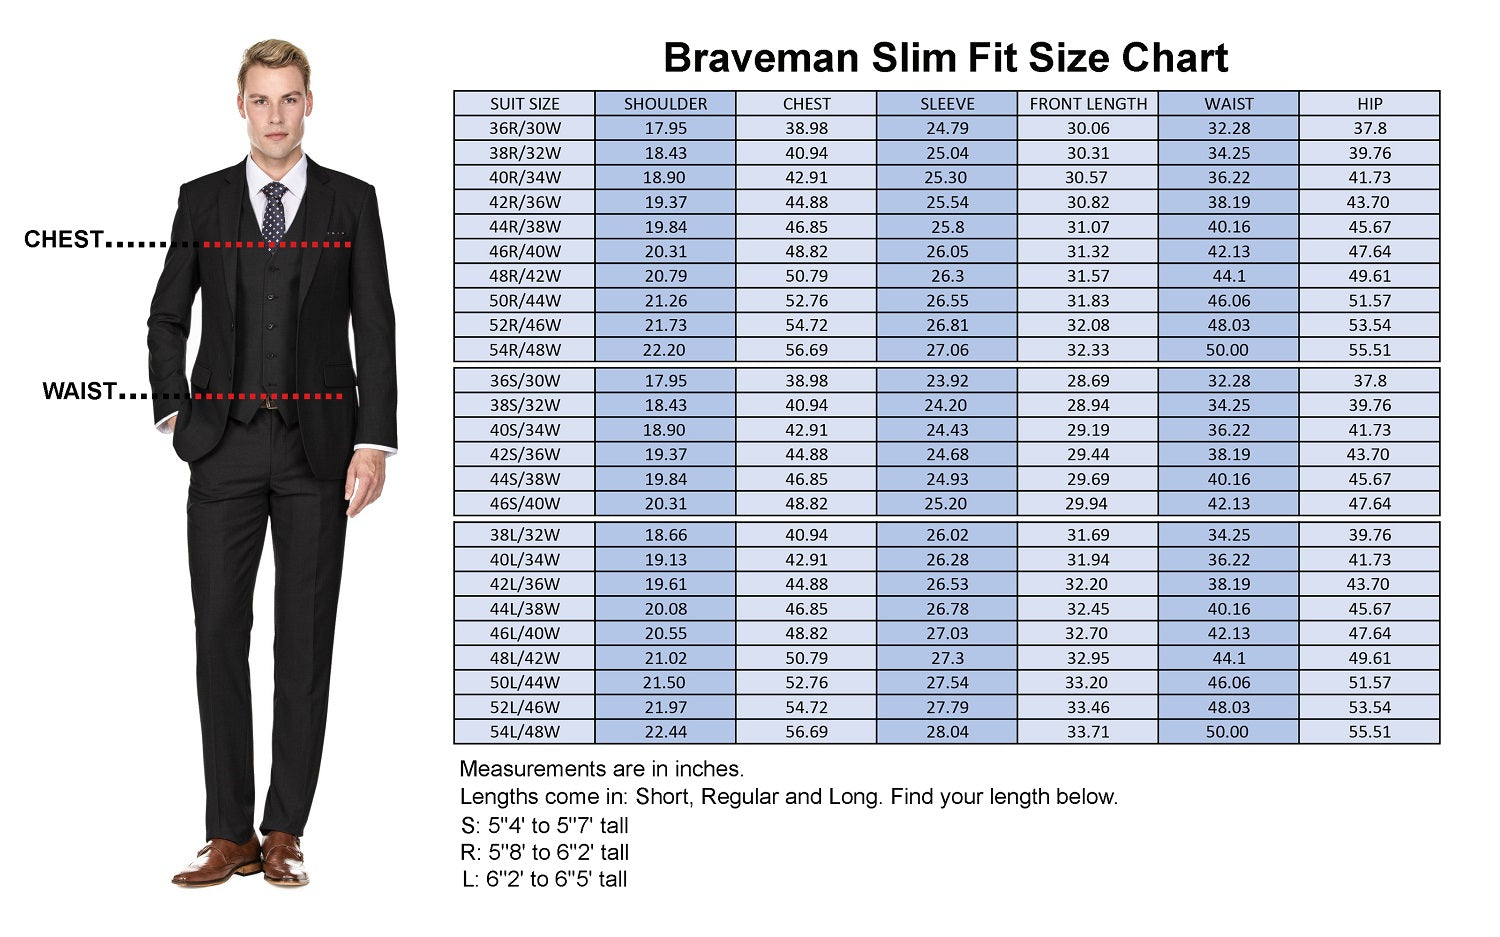 Men's Signature 3-Piece Slim Fit Suits (Black, Navy, Charcoal) Daily Haute